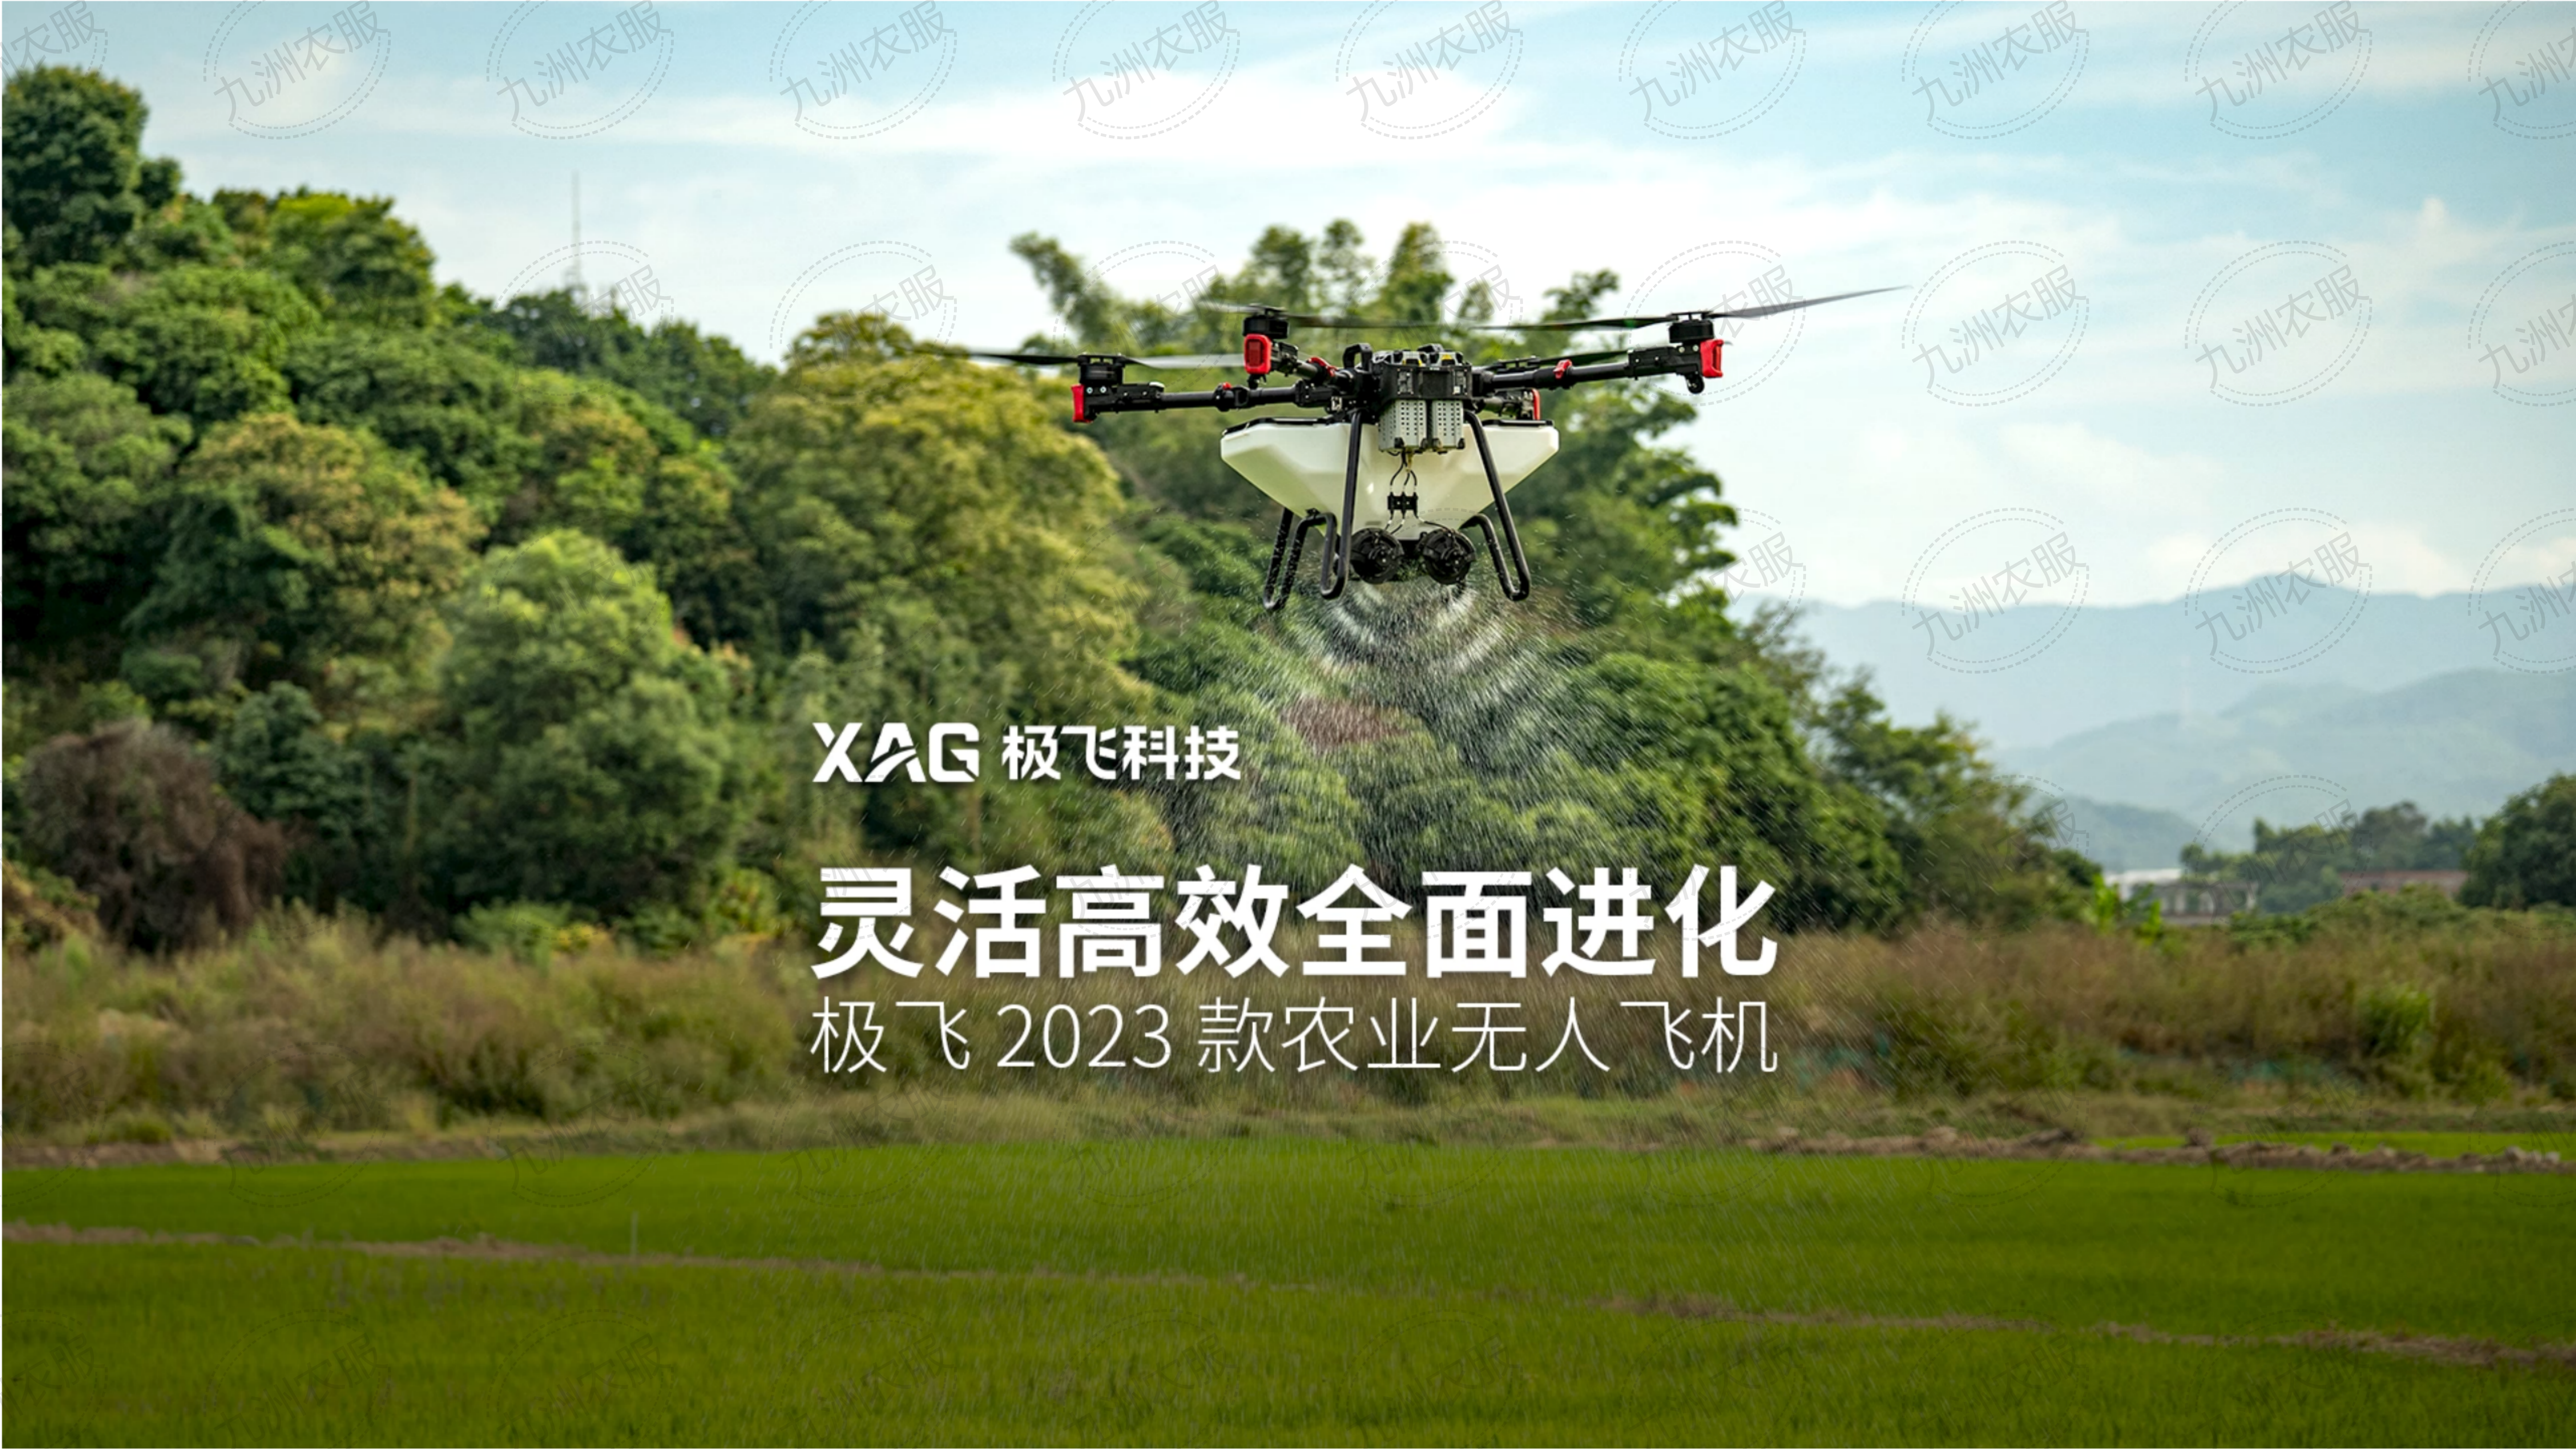 極飛 P100 Pro 農業無人飛機推介會課件_03.png